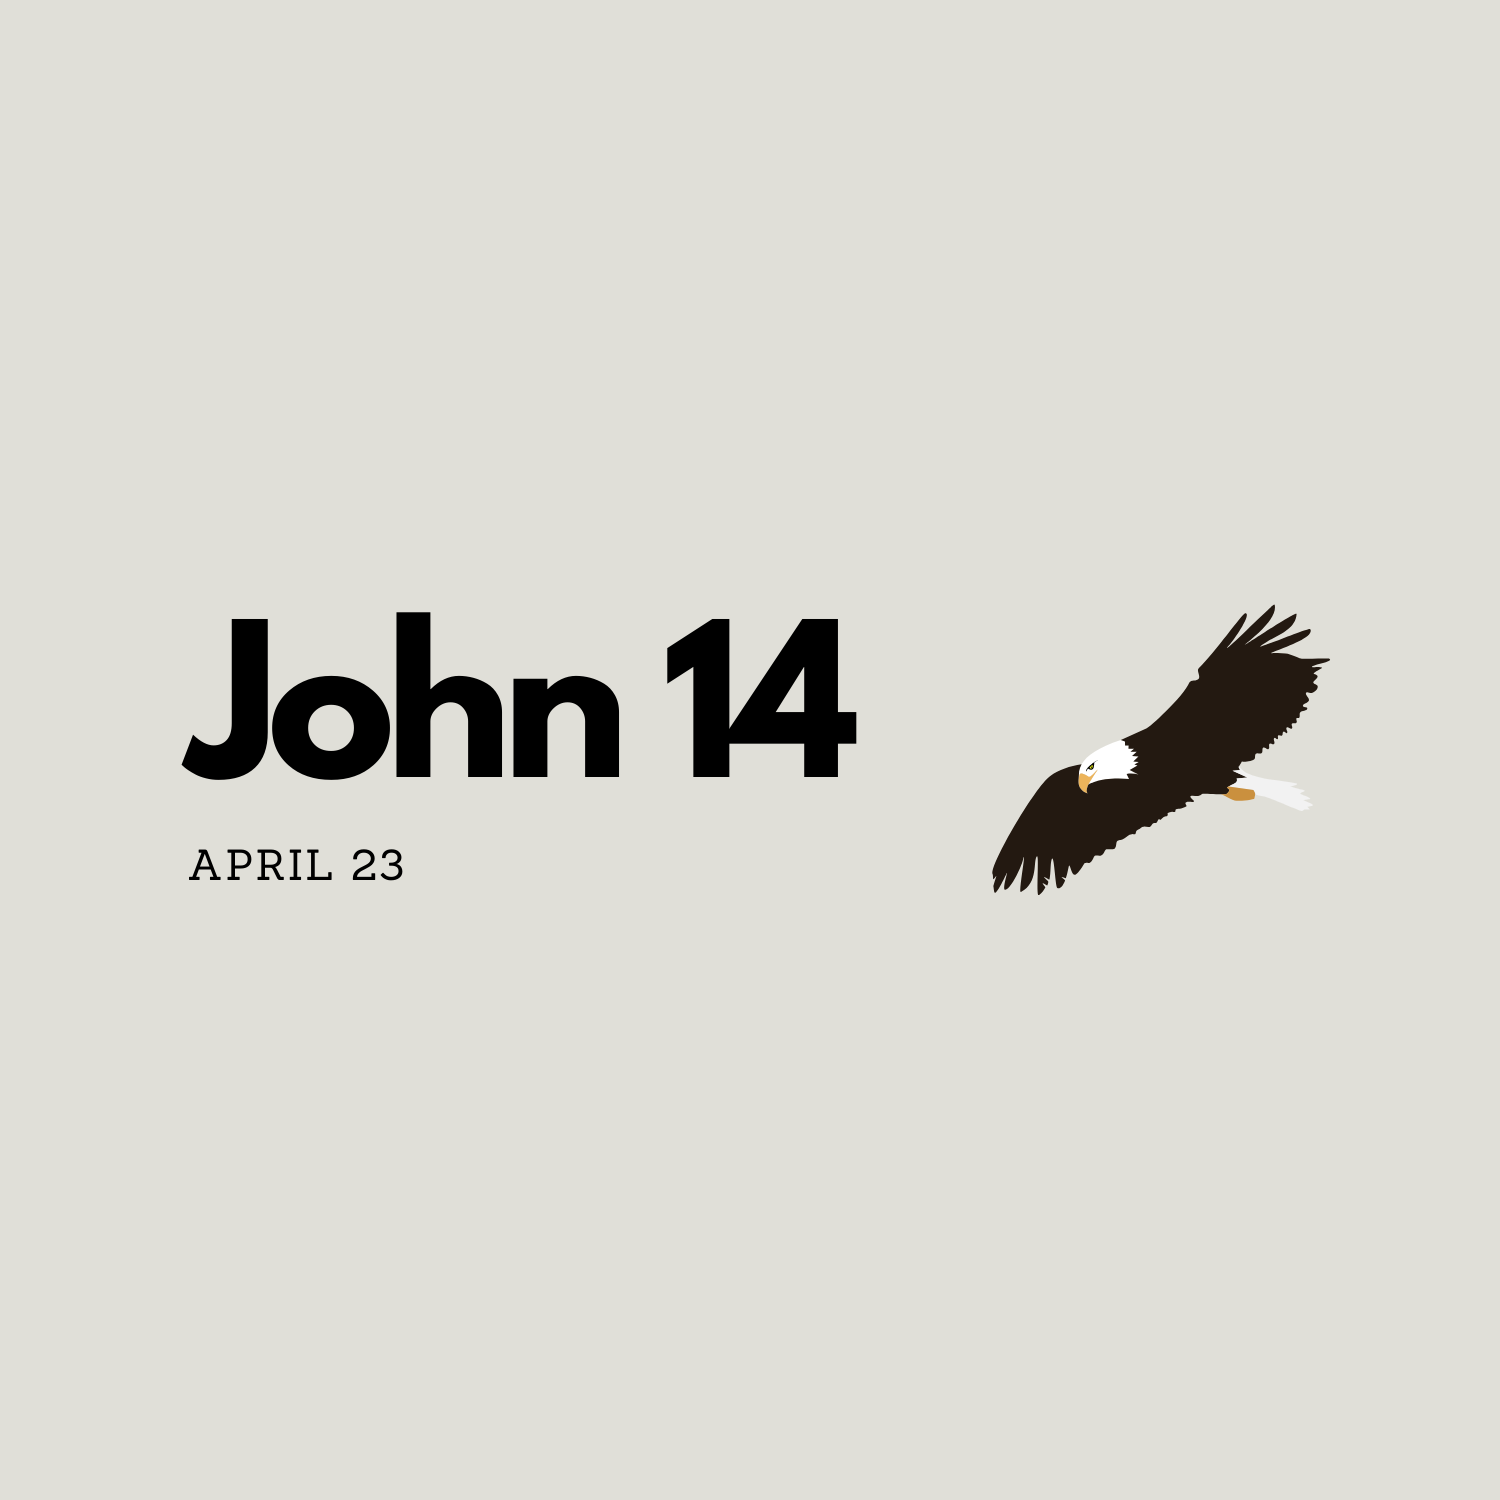 April 23: John 14